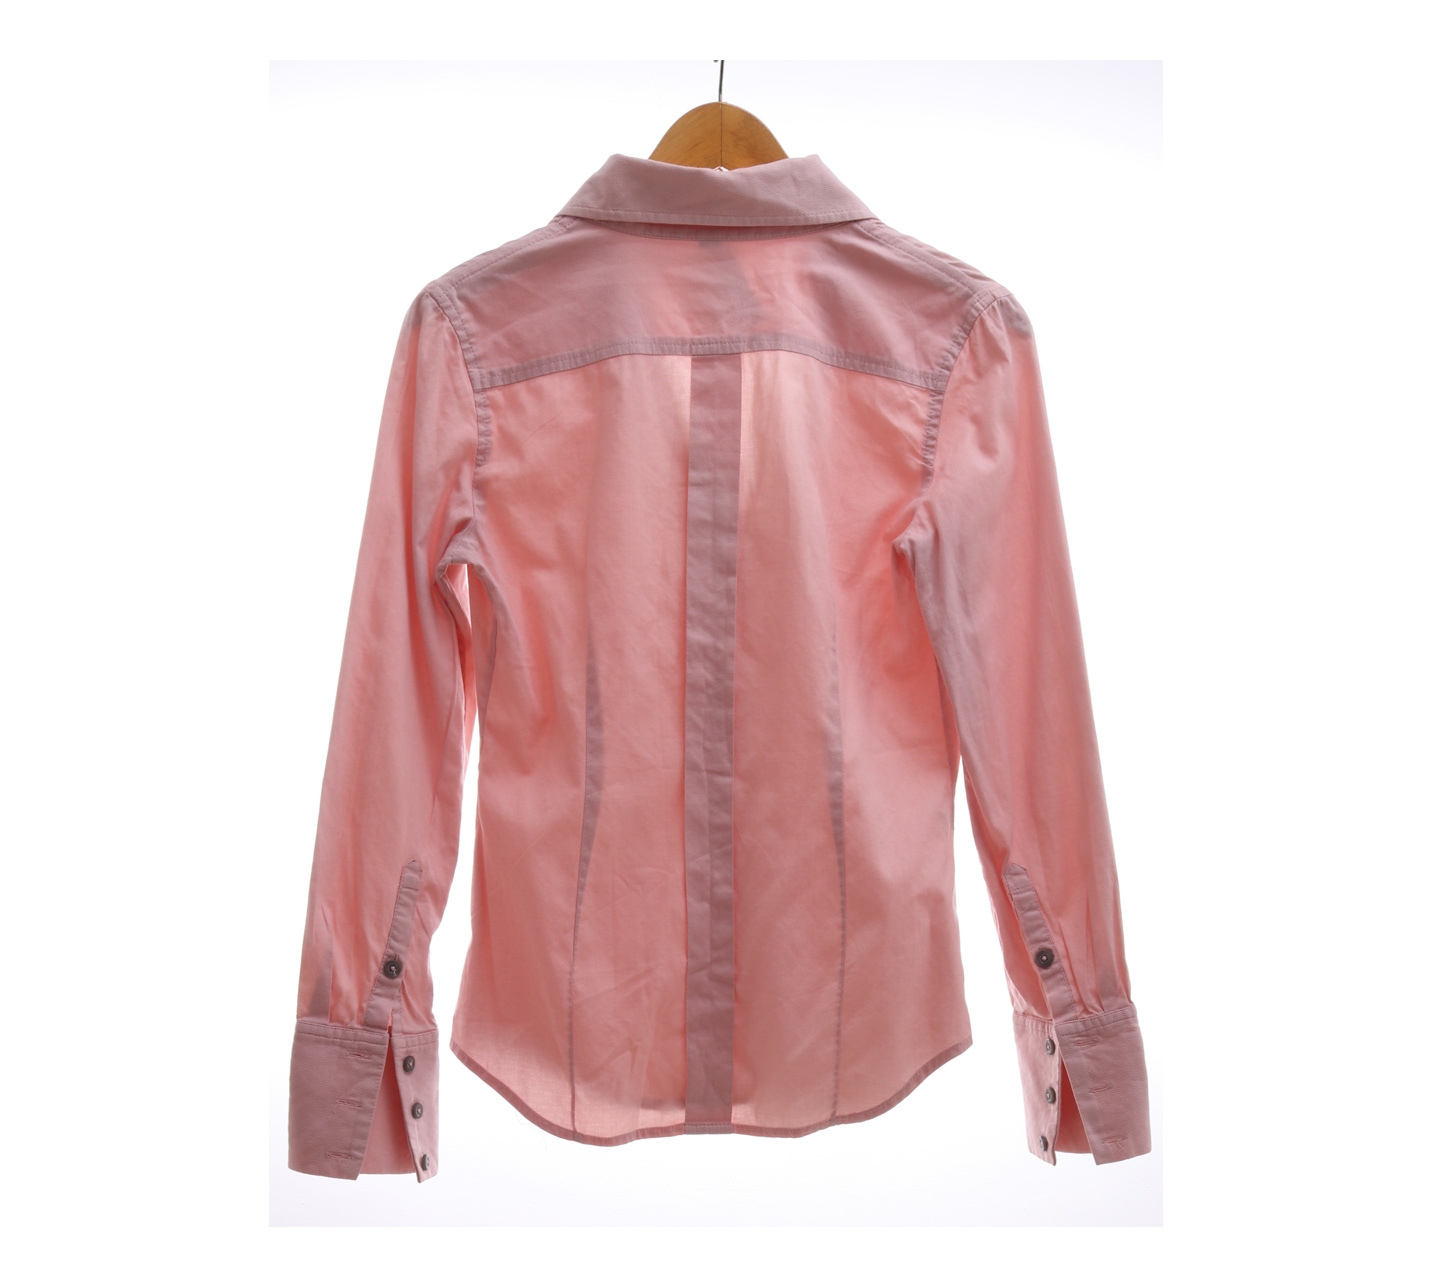 Express Design Studio Pink V-Neck Shirt